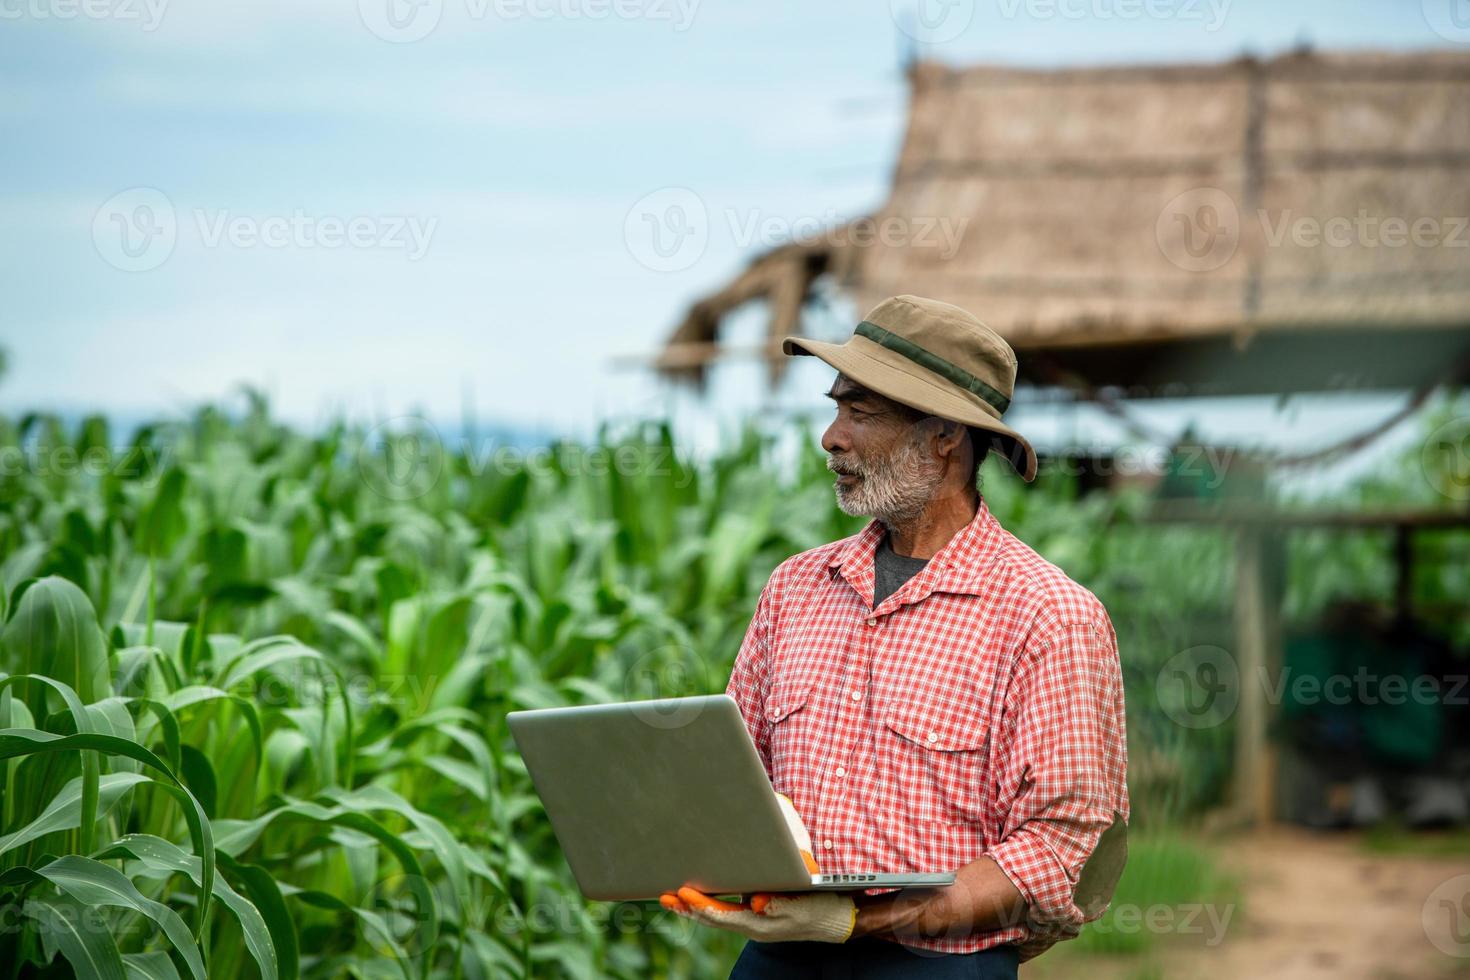 jordbrukare och deras användning av teknik vid majsodling. foto